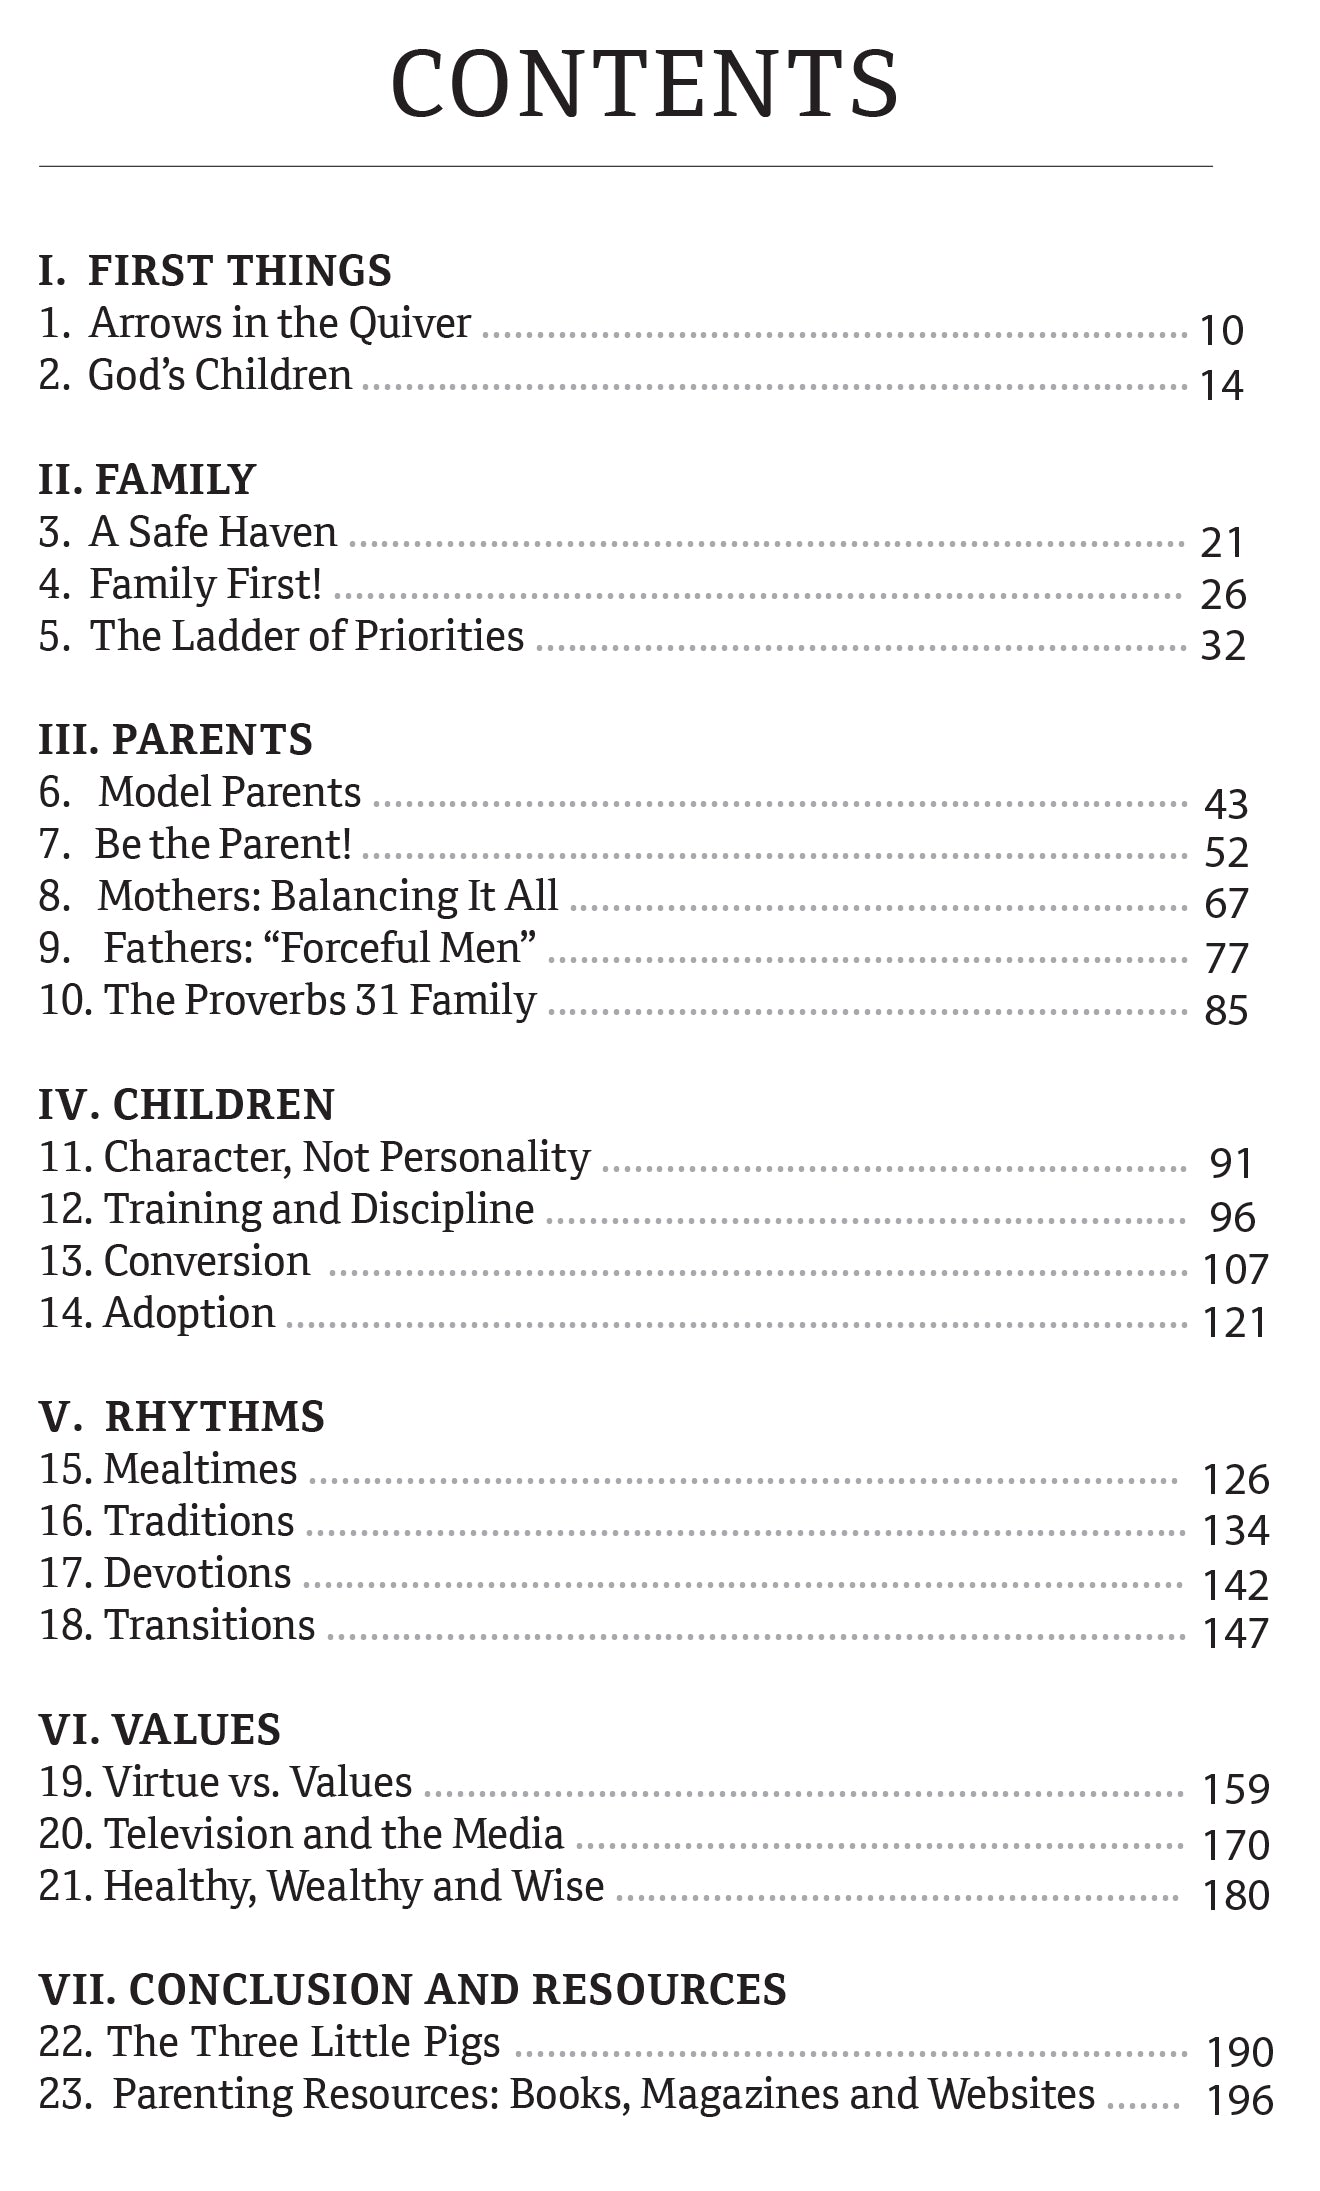 Principle Centered Parenting - Illumination Publishers